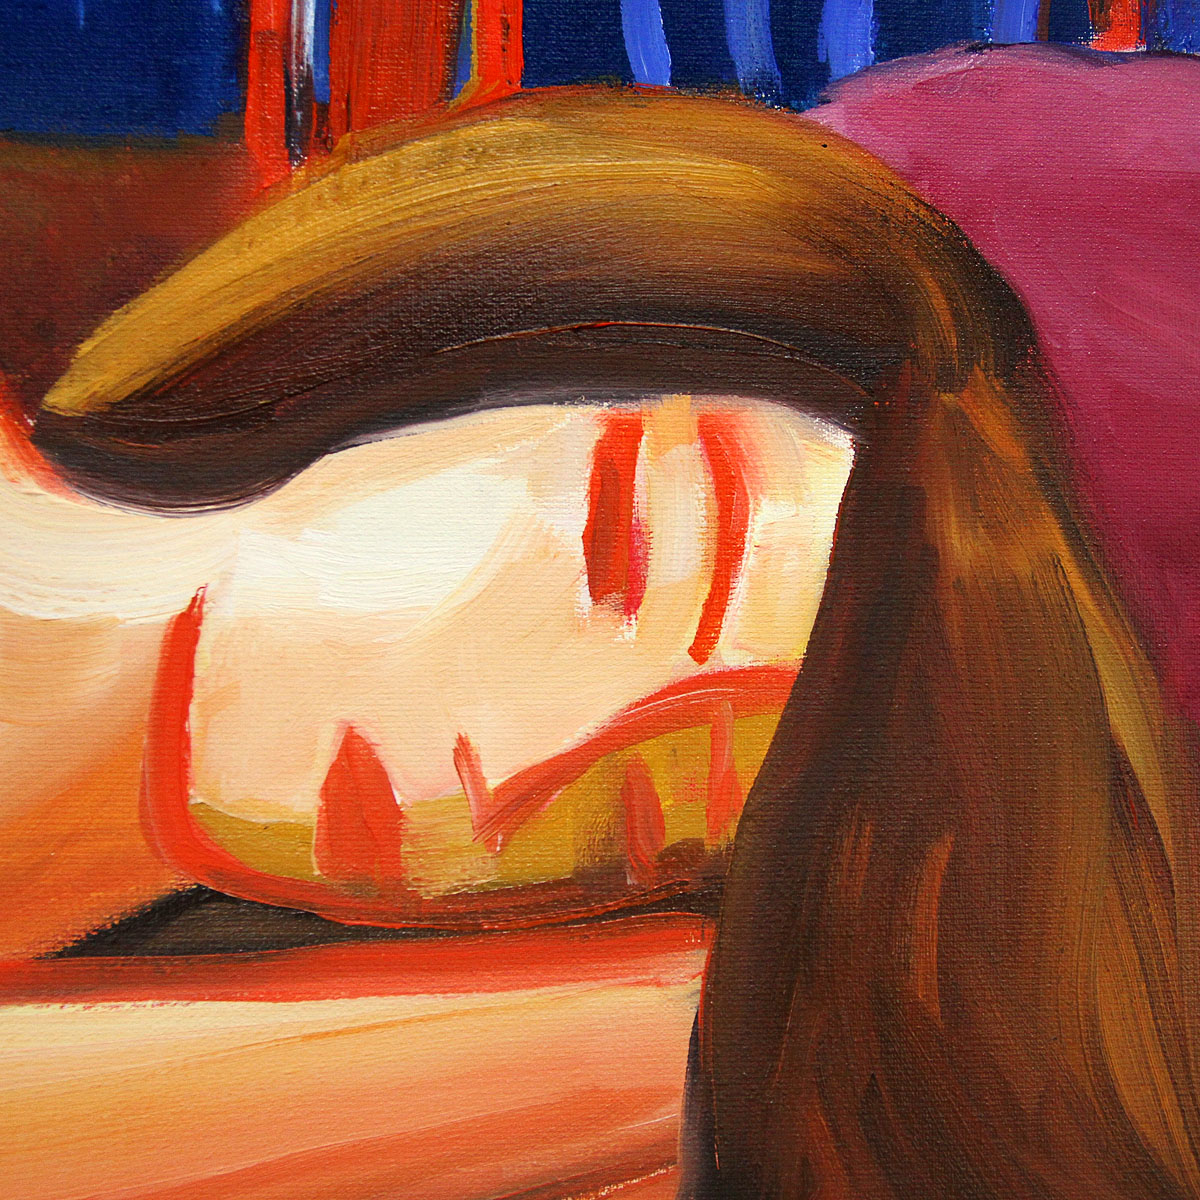 M. Cieśla: "Wenn ein Mädchen schläft, wird es vom Teufel versucht", Original/Unikat, Expressionistis